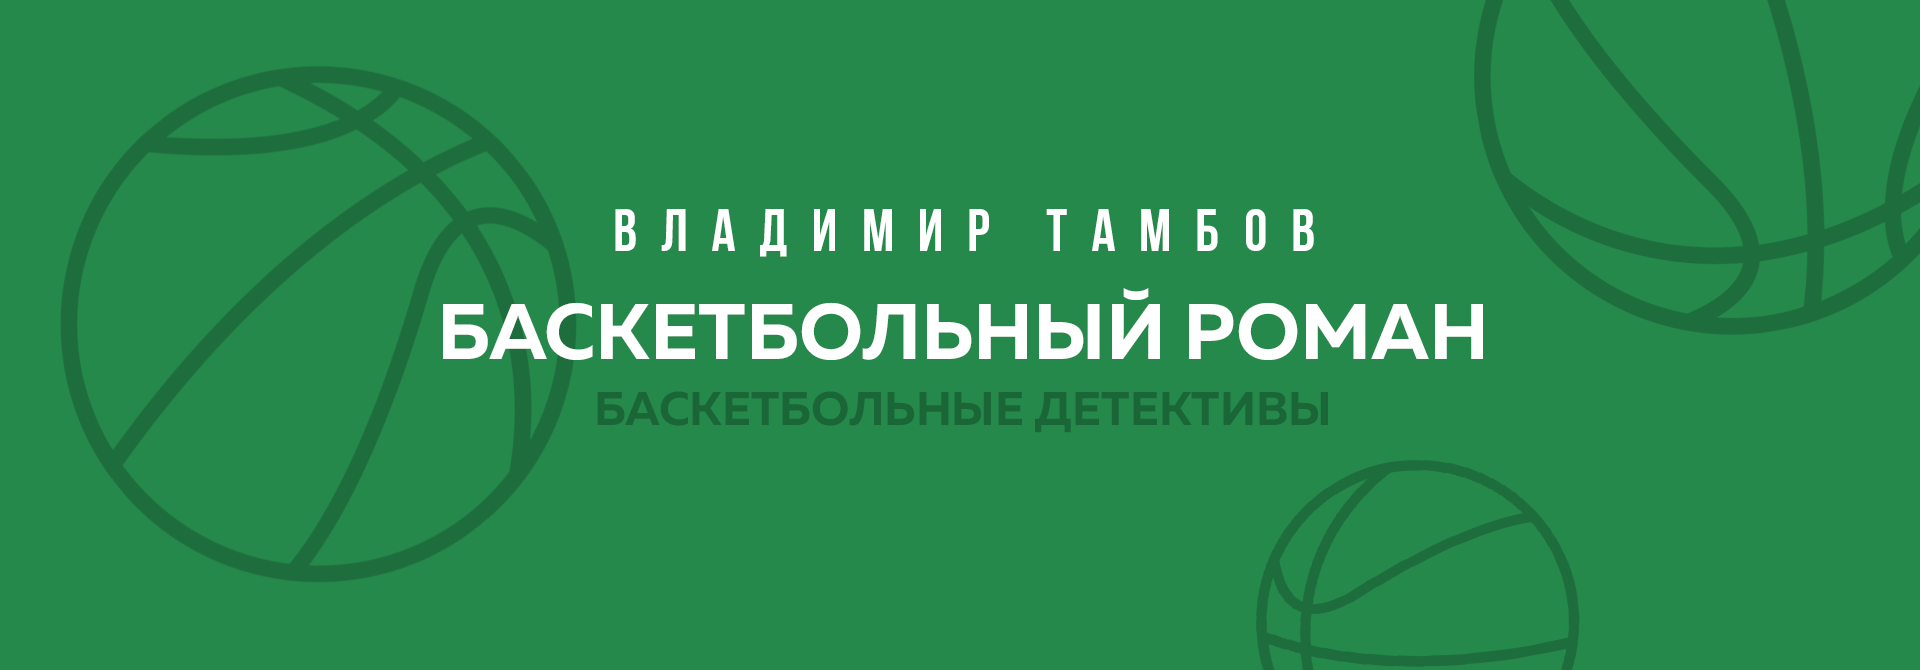 Баскетбольный роман Владимира Тамбова «Женщина для профессионала» 